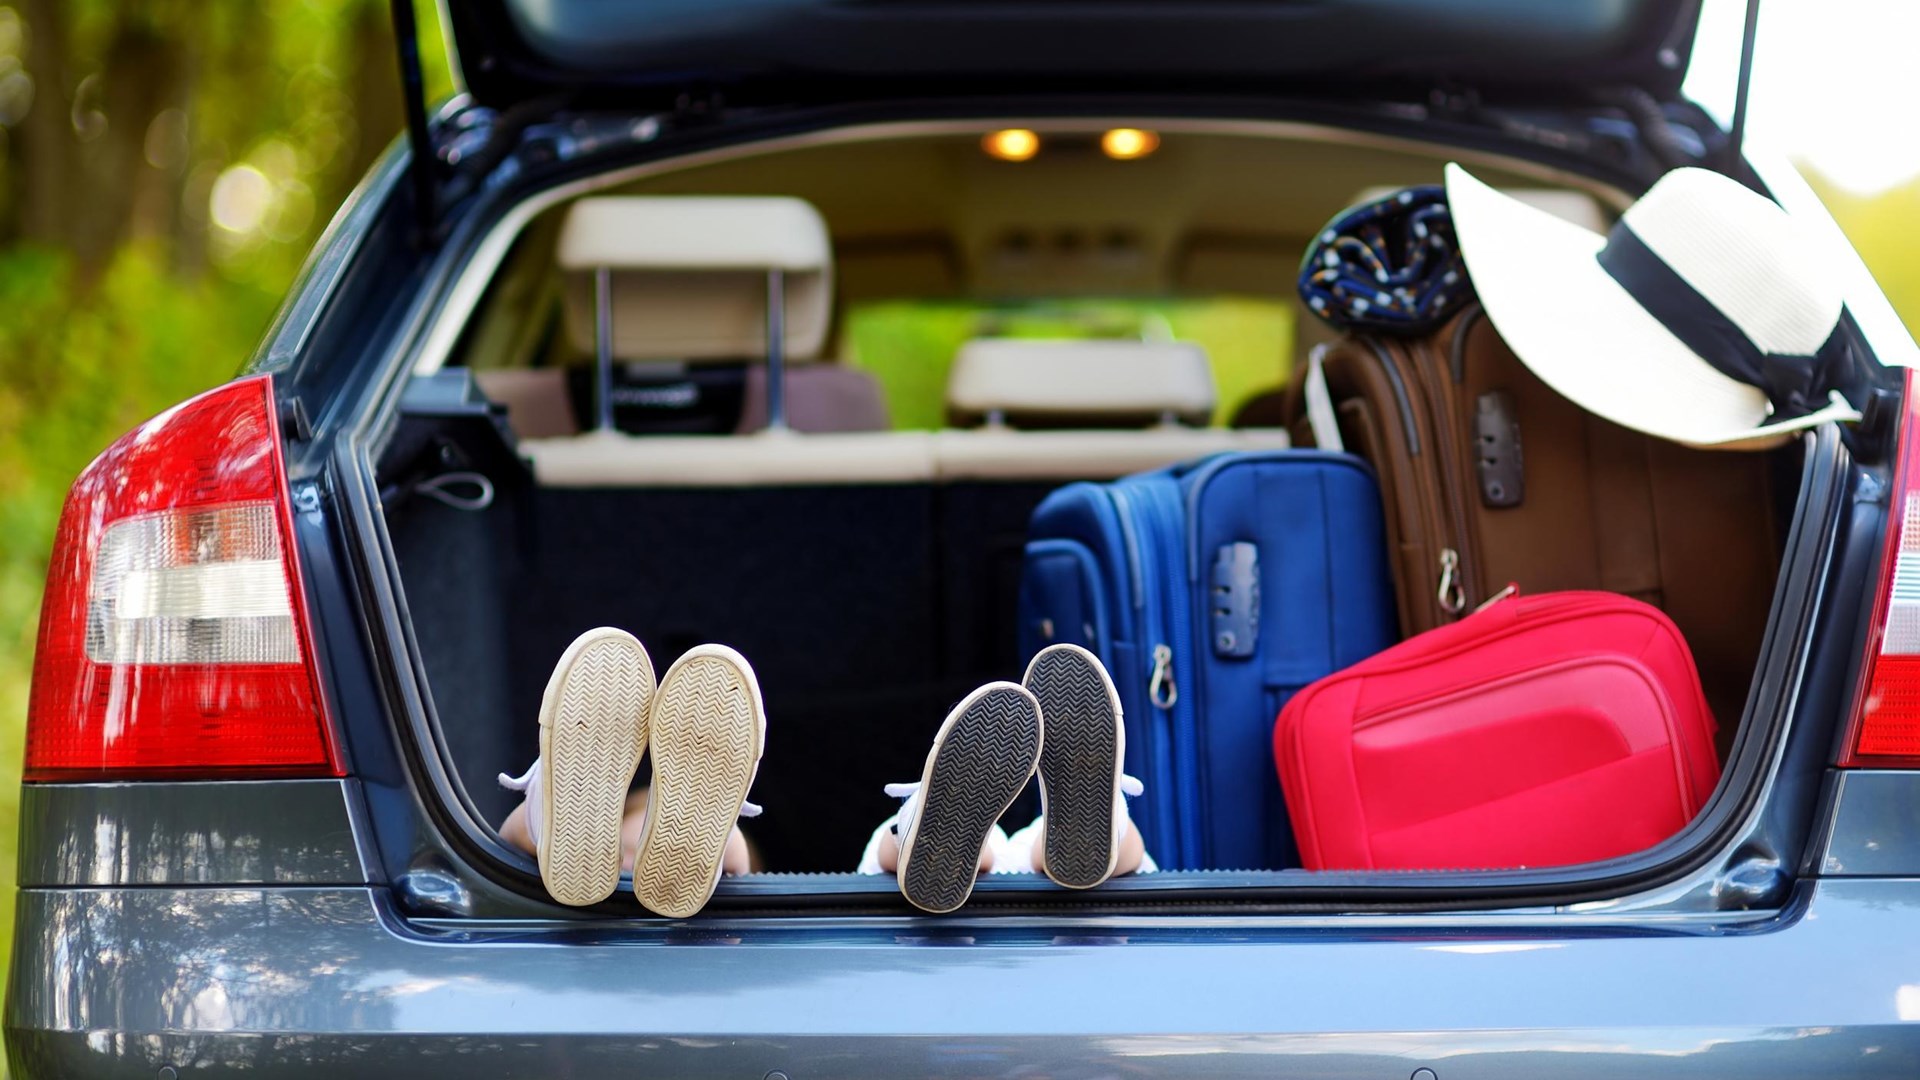 Έφτασε η ώρα των διακοπών; Δείτε πώς να φορτώσετε σωστά και με ασφάλεια τις αποσκευές σας στο αυτοκίνητο